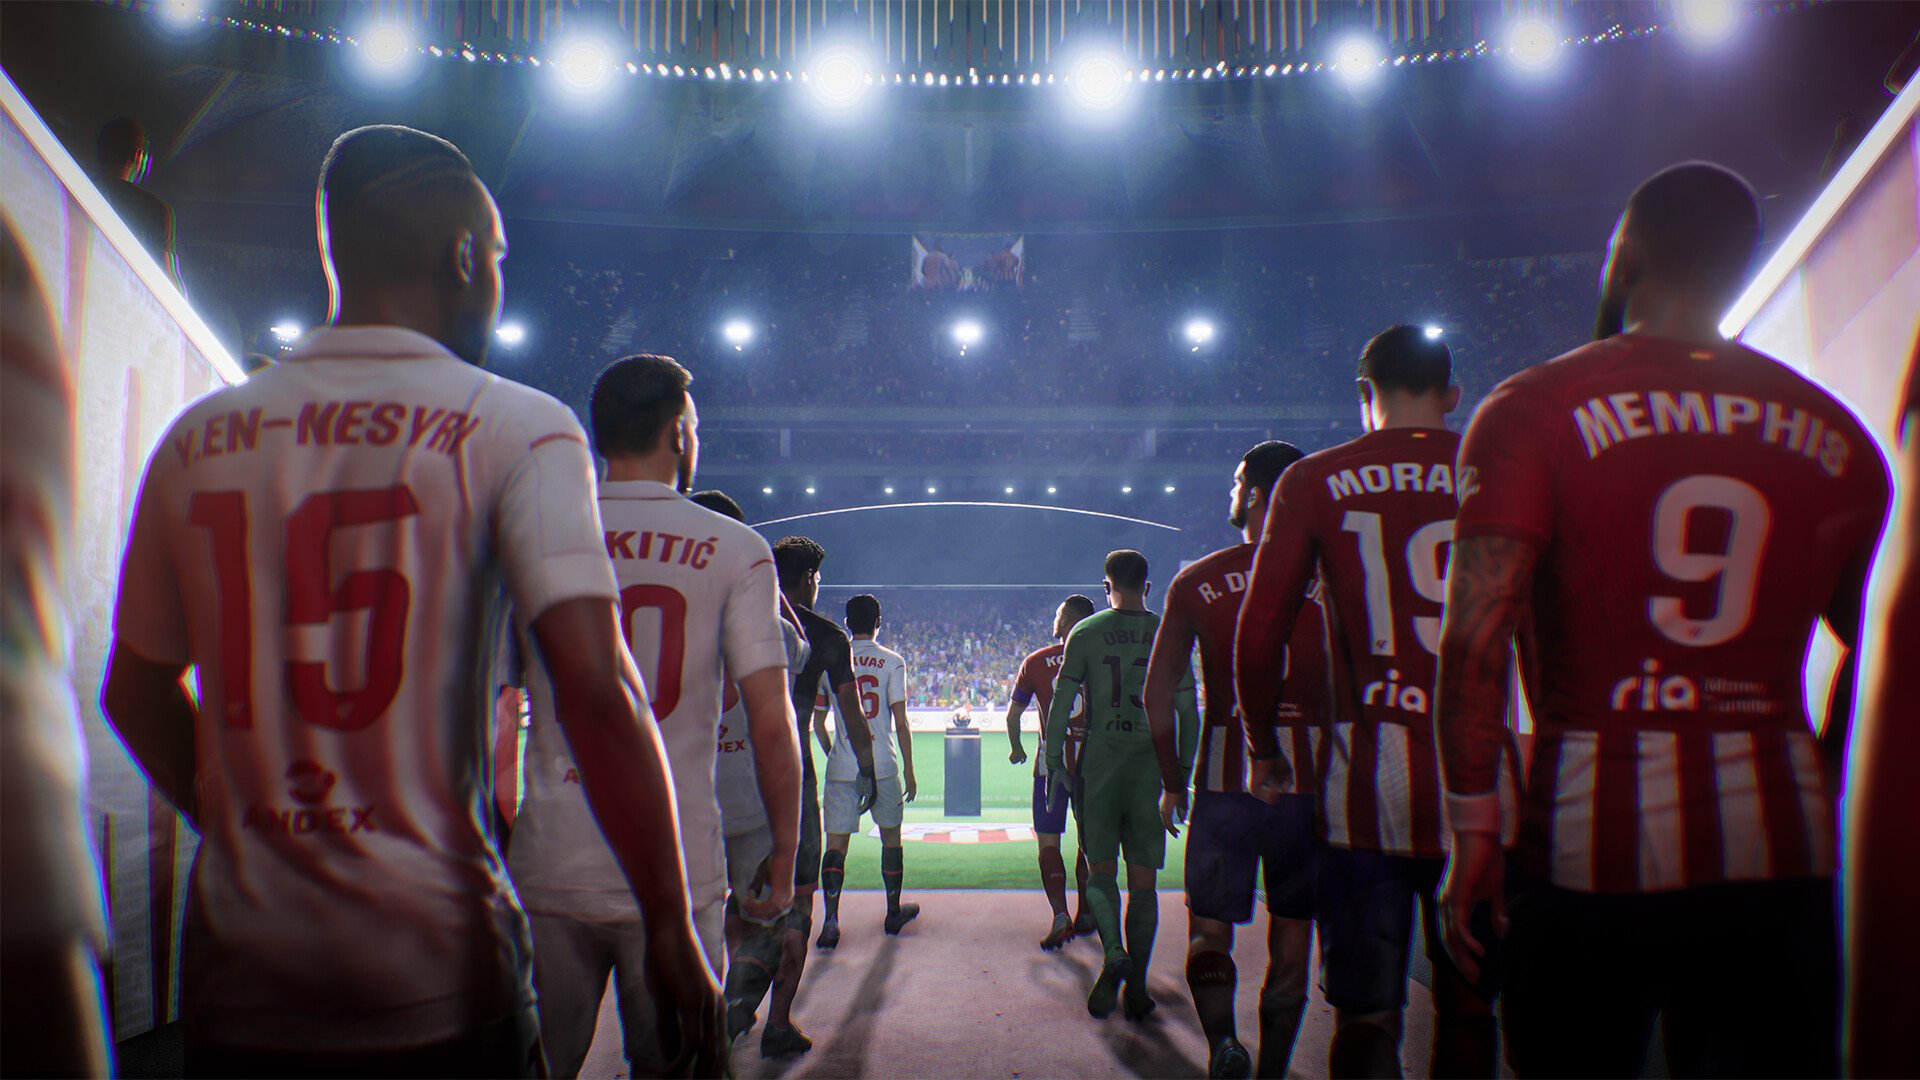 Acesso Antecipado a FIFA 19 - Como Jogá-lo Primeiro? 